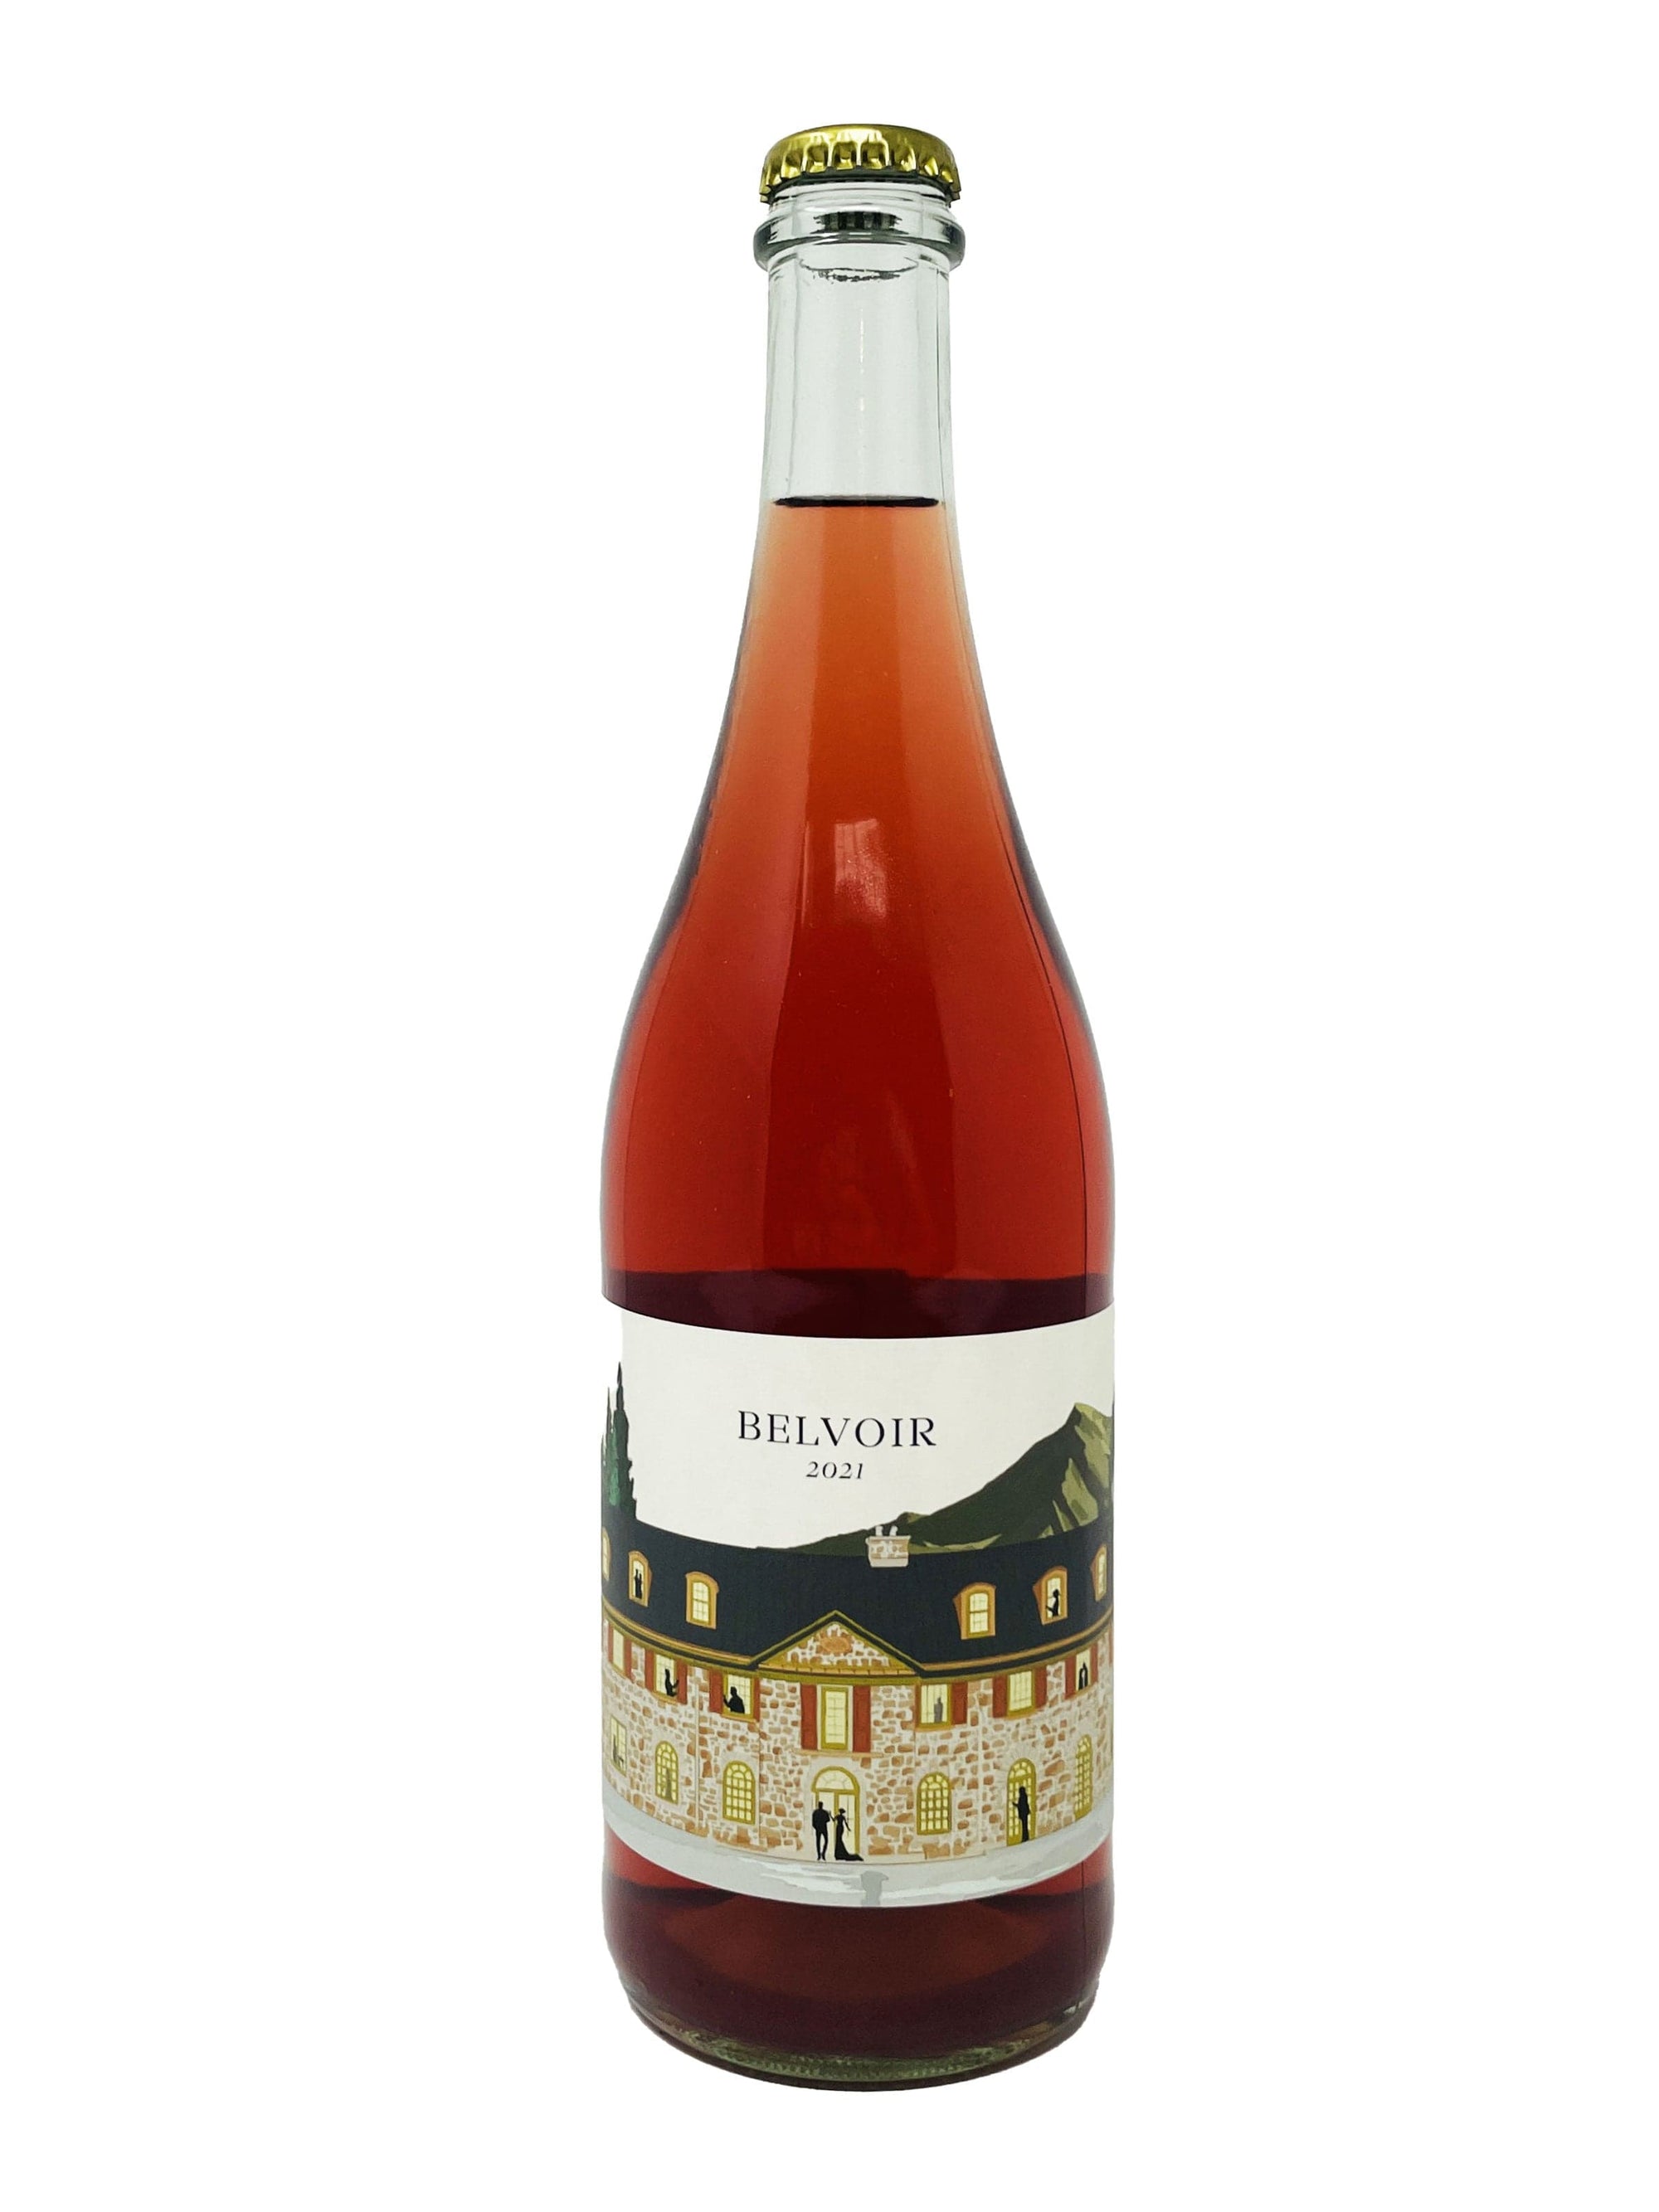 Vignoble Château Fontaine vin Belvoir 2021 - Vin mousseux rosé du vignoble Château Fontaine